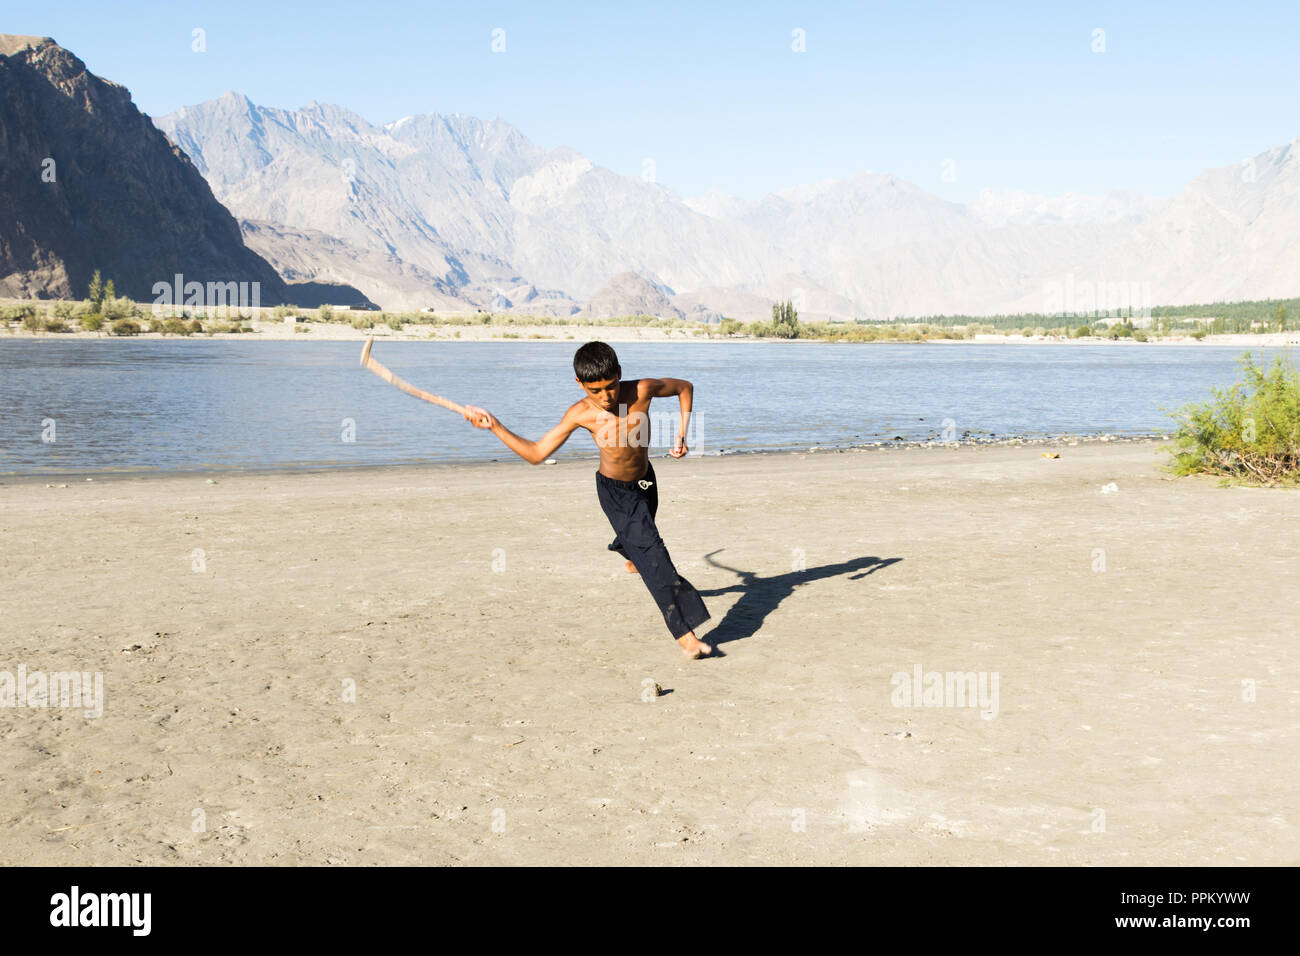 Pakistani kids play hockey on sand, Skardu, Gilgit-Baltistan, Pakistan Stock Photo